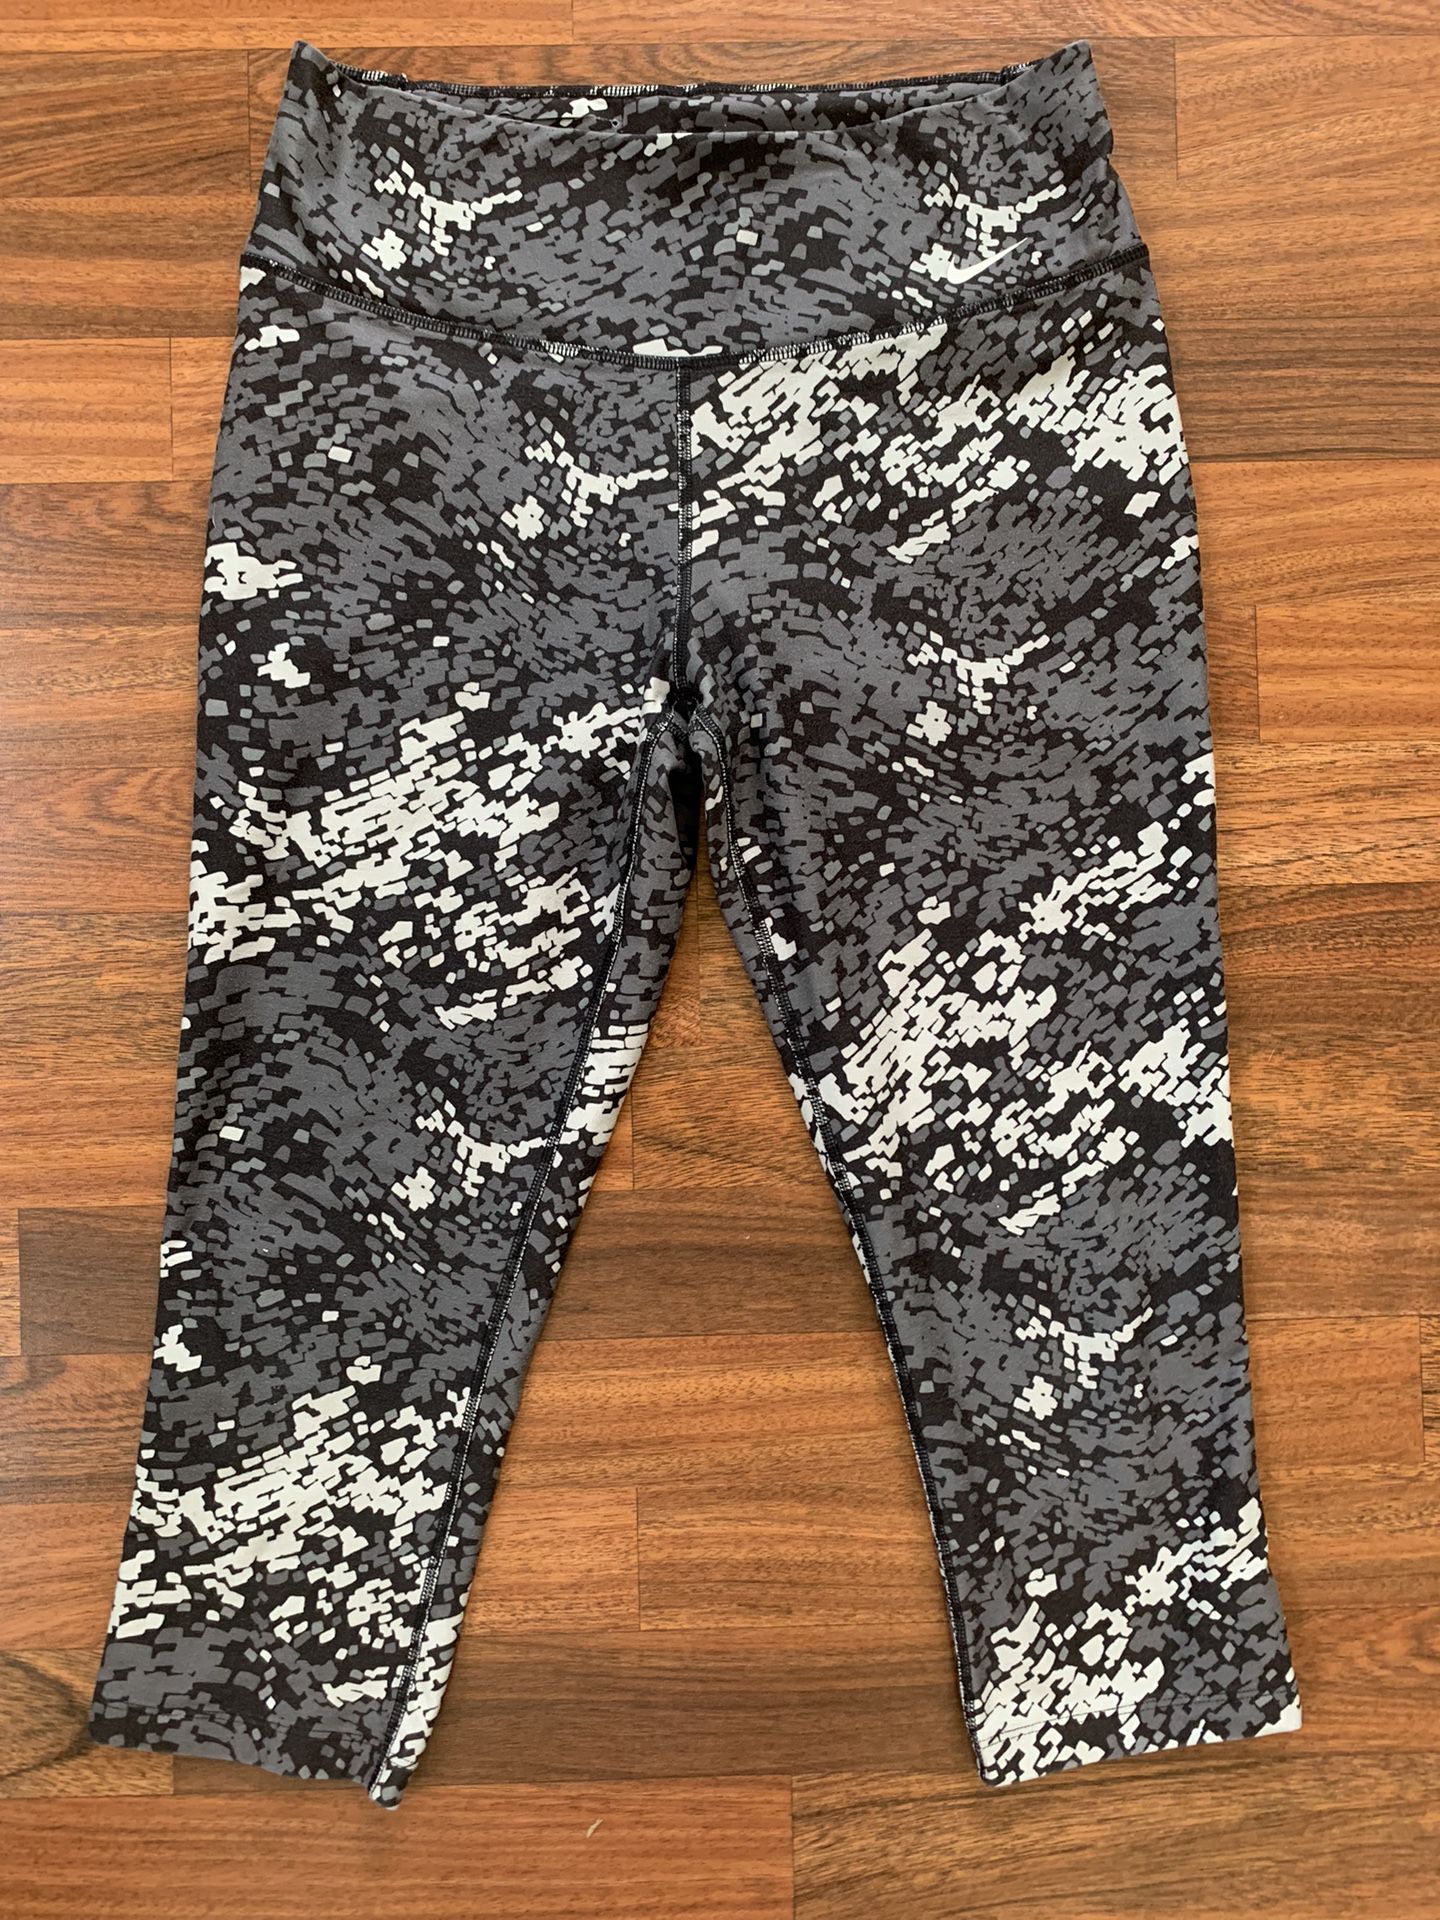 Nike DRI-FIT 3/4 Capri Tights Active Pant Size M Black gray